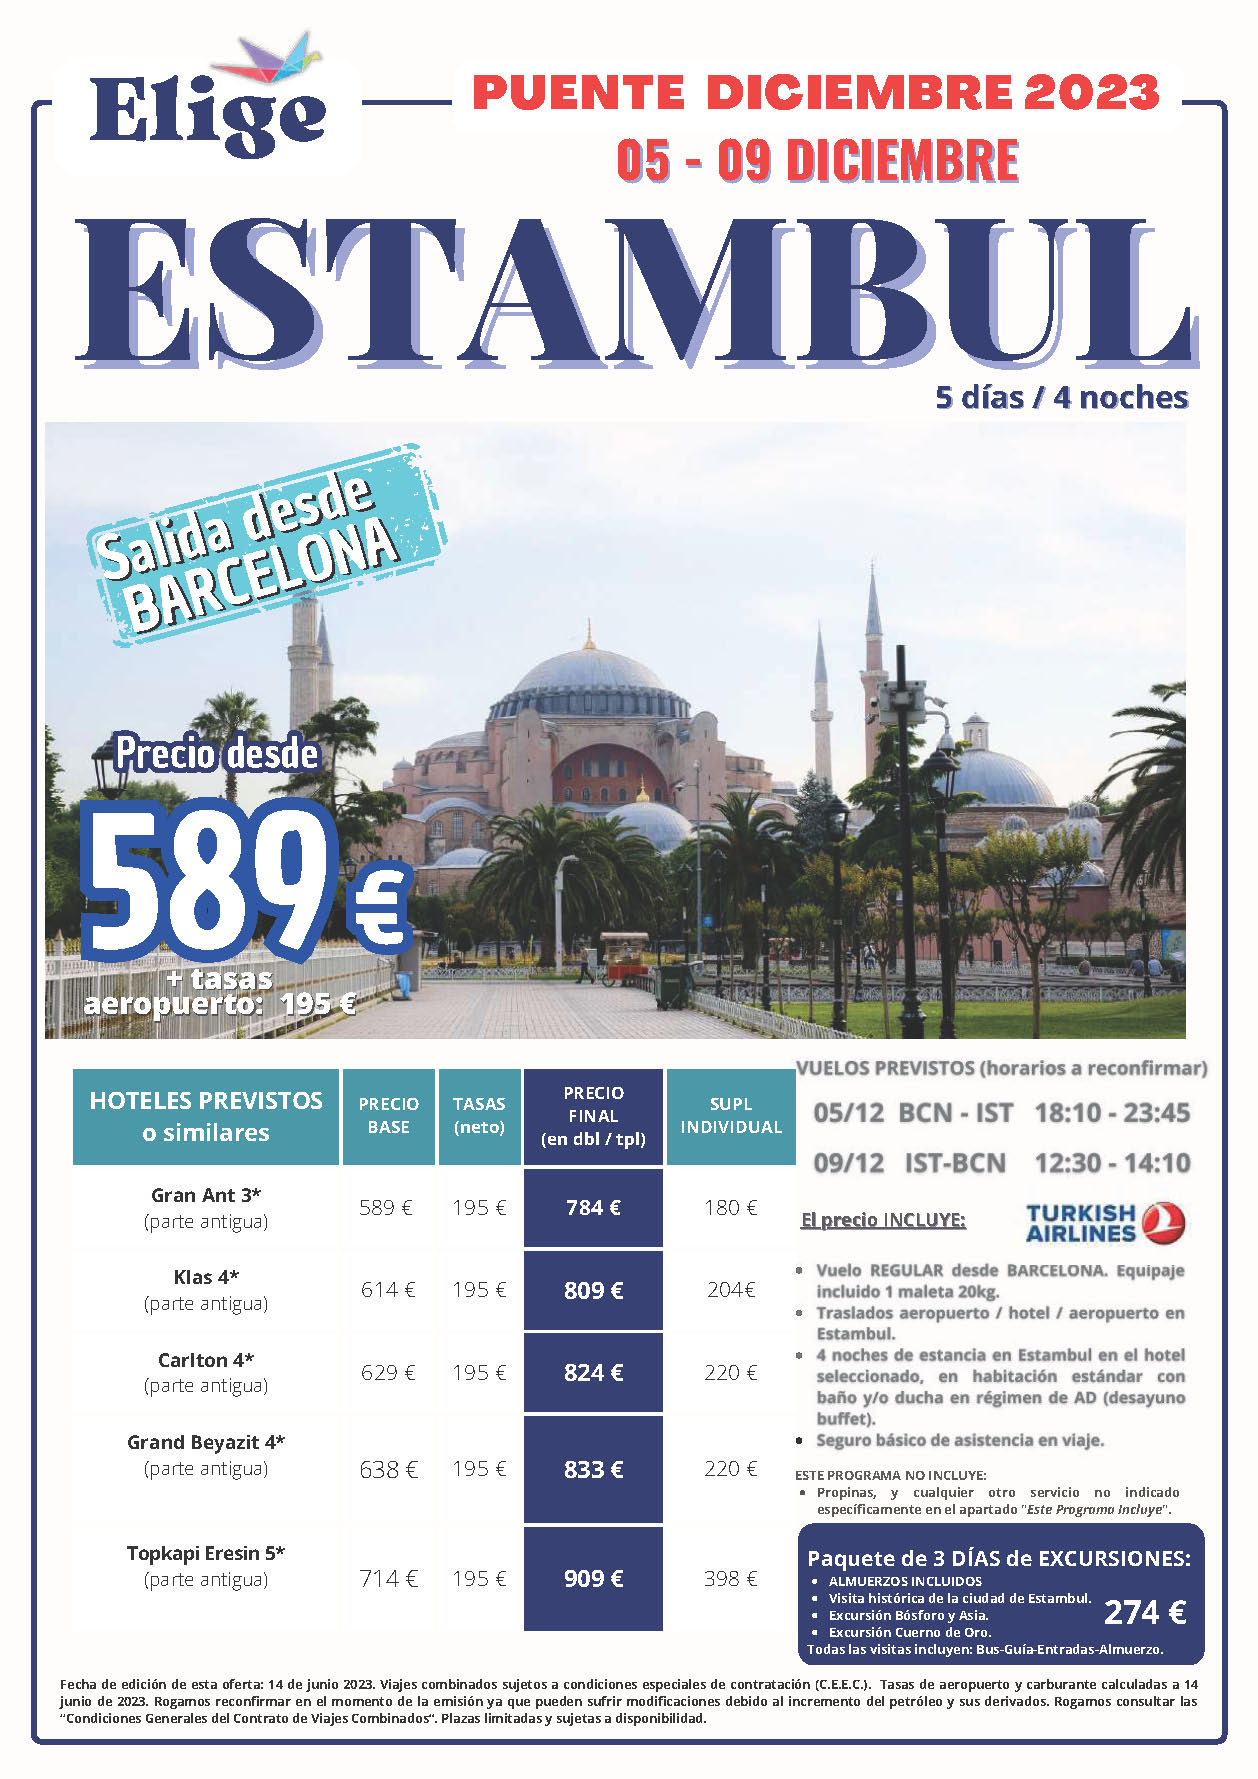 Oferta Elige tu Viaje Puente de Diciembre 2023 Estancia en Turquia 5 dias salida 5 diciembre en vuelo directo desde Barcelona